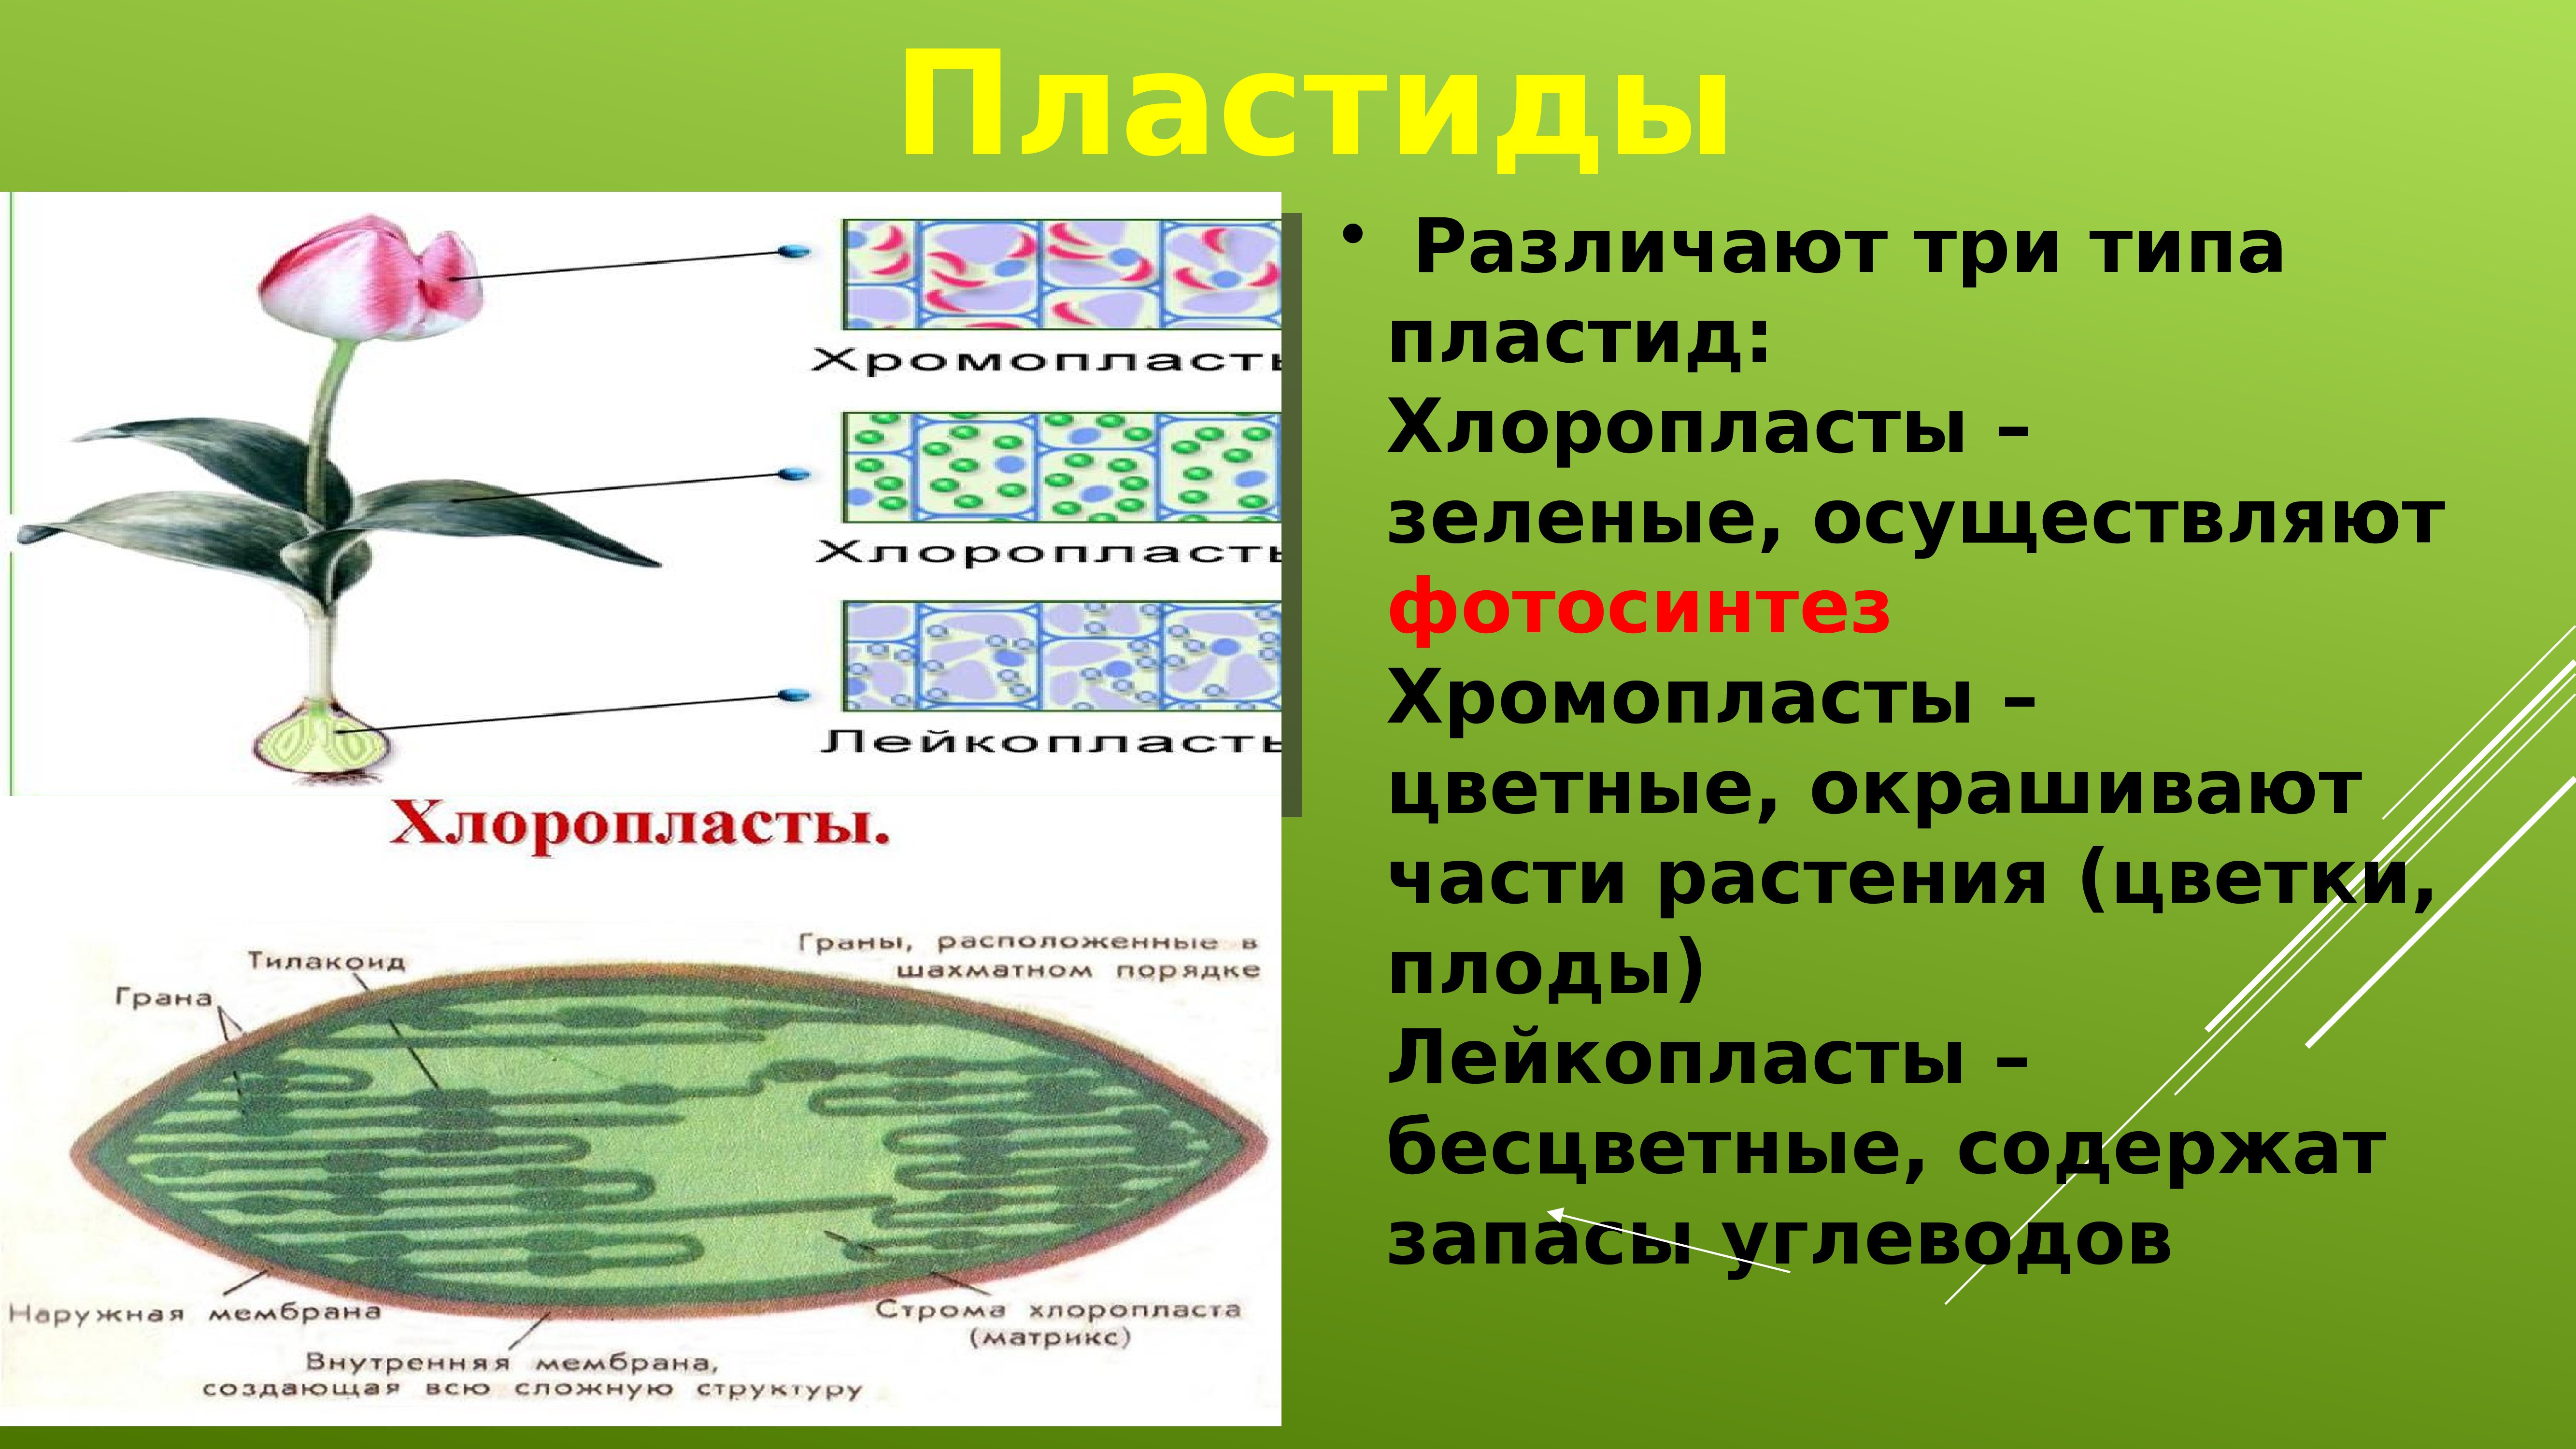 Хлоропласты определяют. Пластиды растительной клетки 5 класс биология. Что такое хлоропласты в биологии 5 класс. Пластиды строение 5 класс биология. Хлоропласты и лейкопласты в клетках.